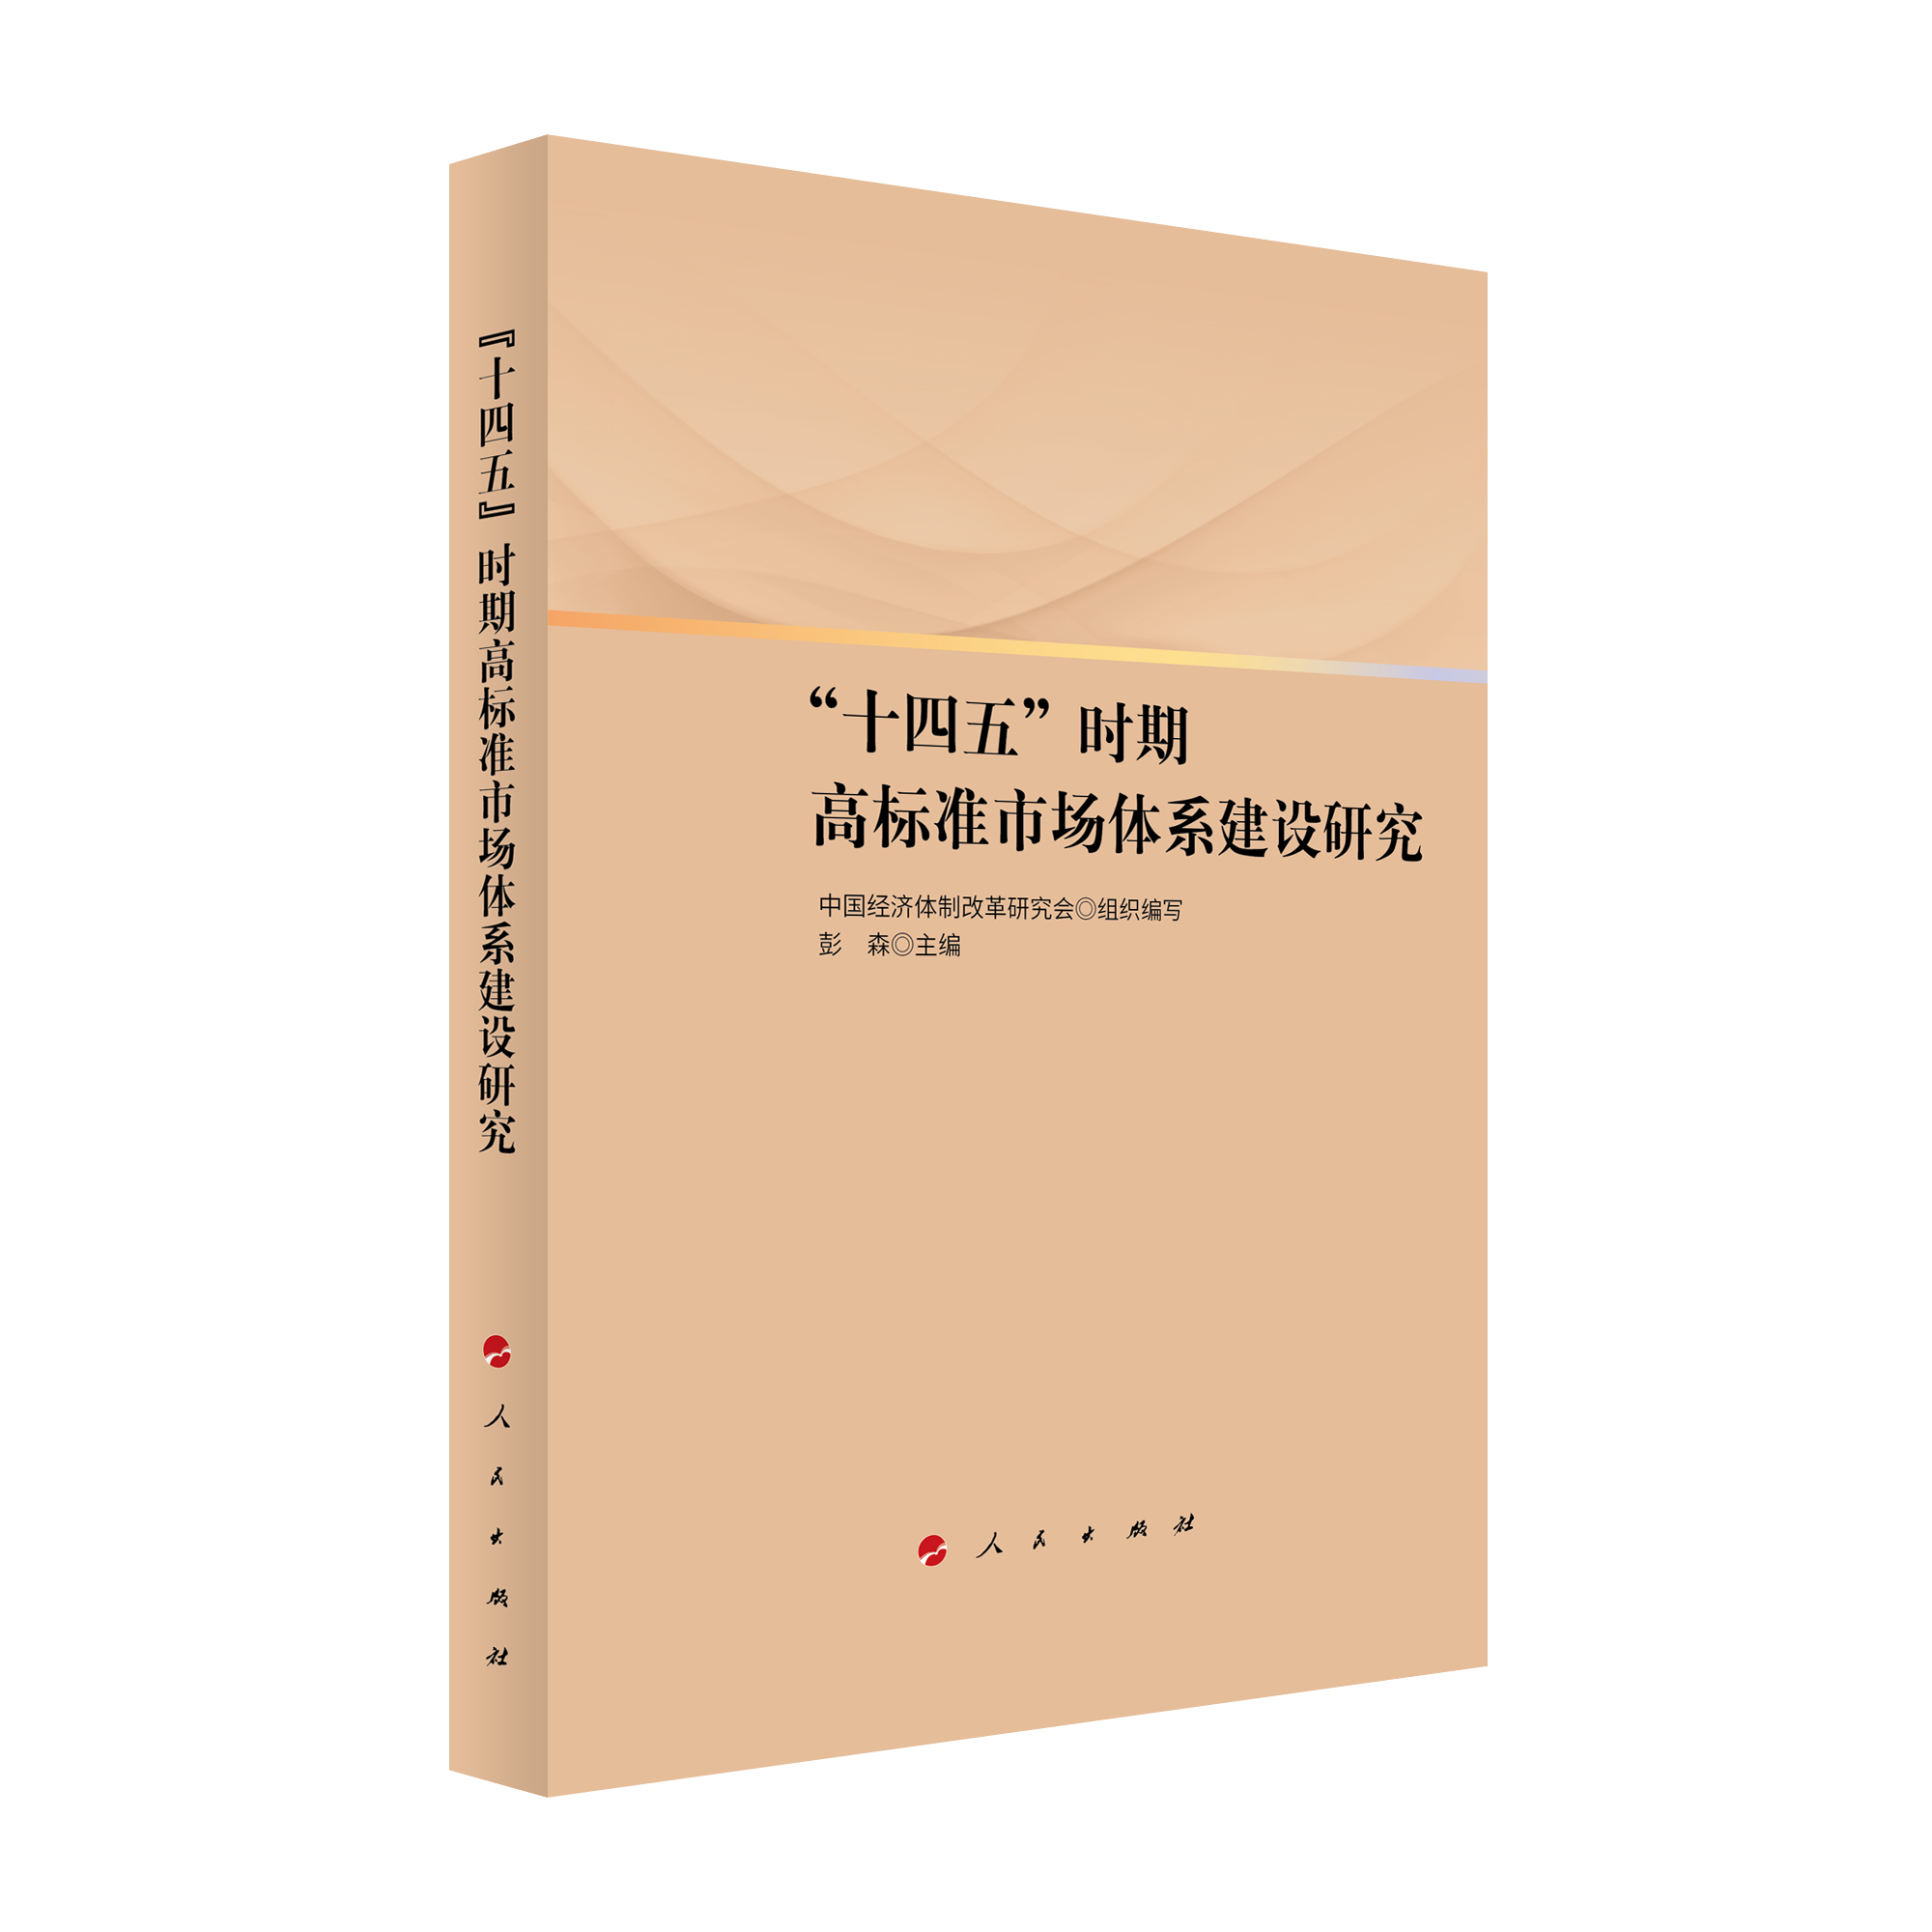 2021年12月，彭森主编的《“十四五”时期高标准市场体系建设研究》一书由人民出版社出版